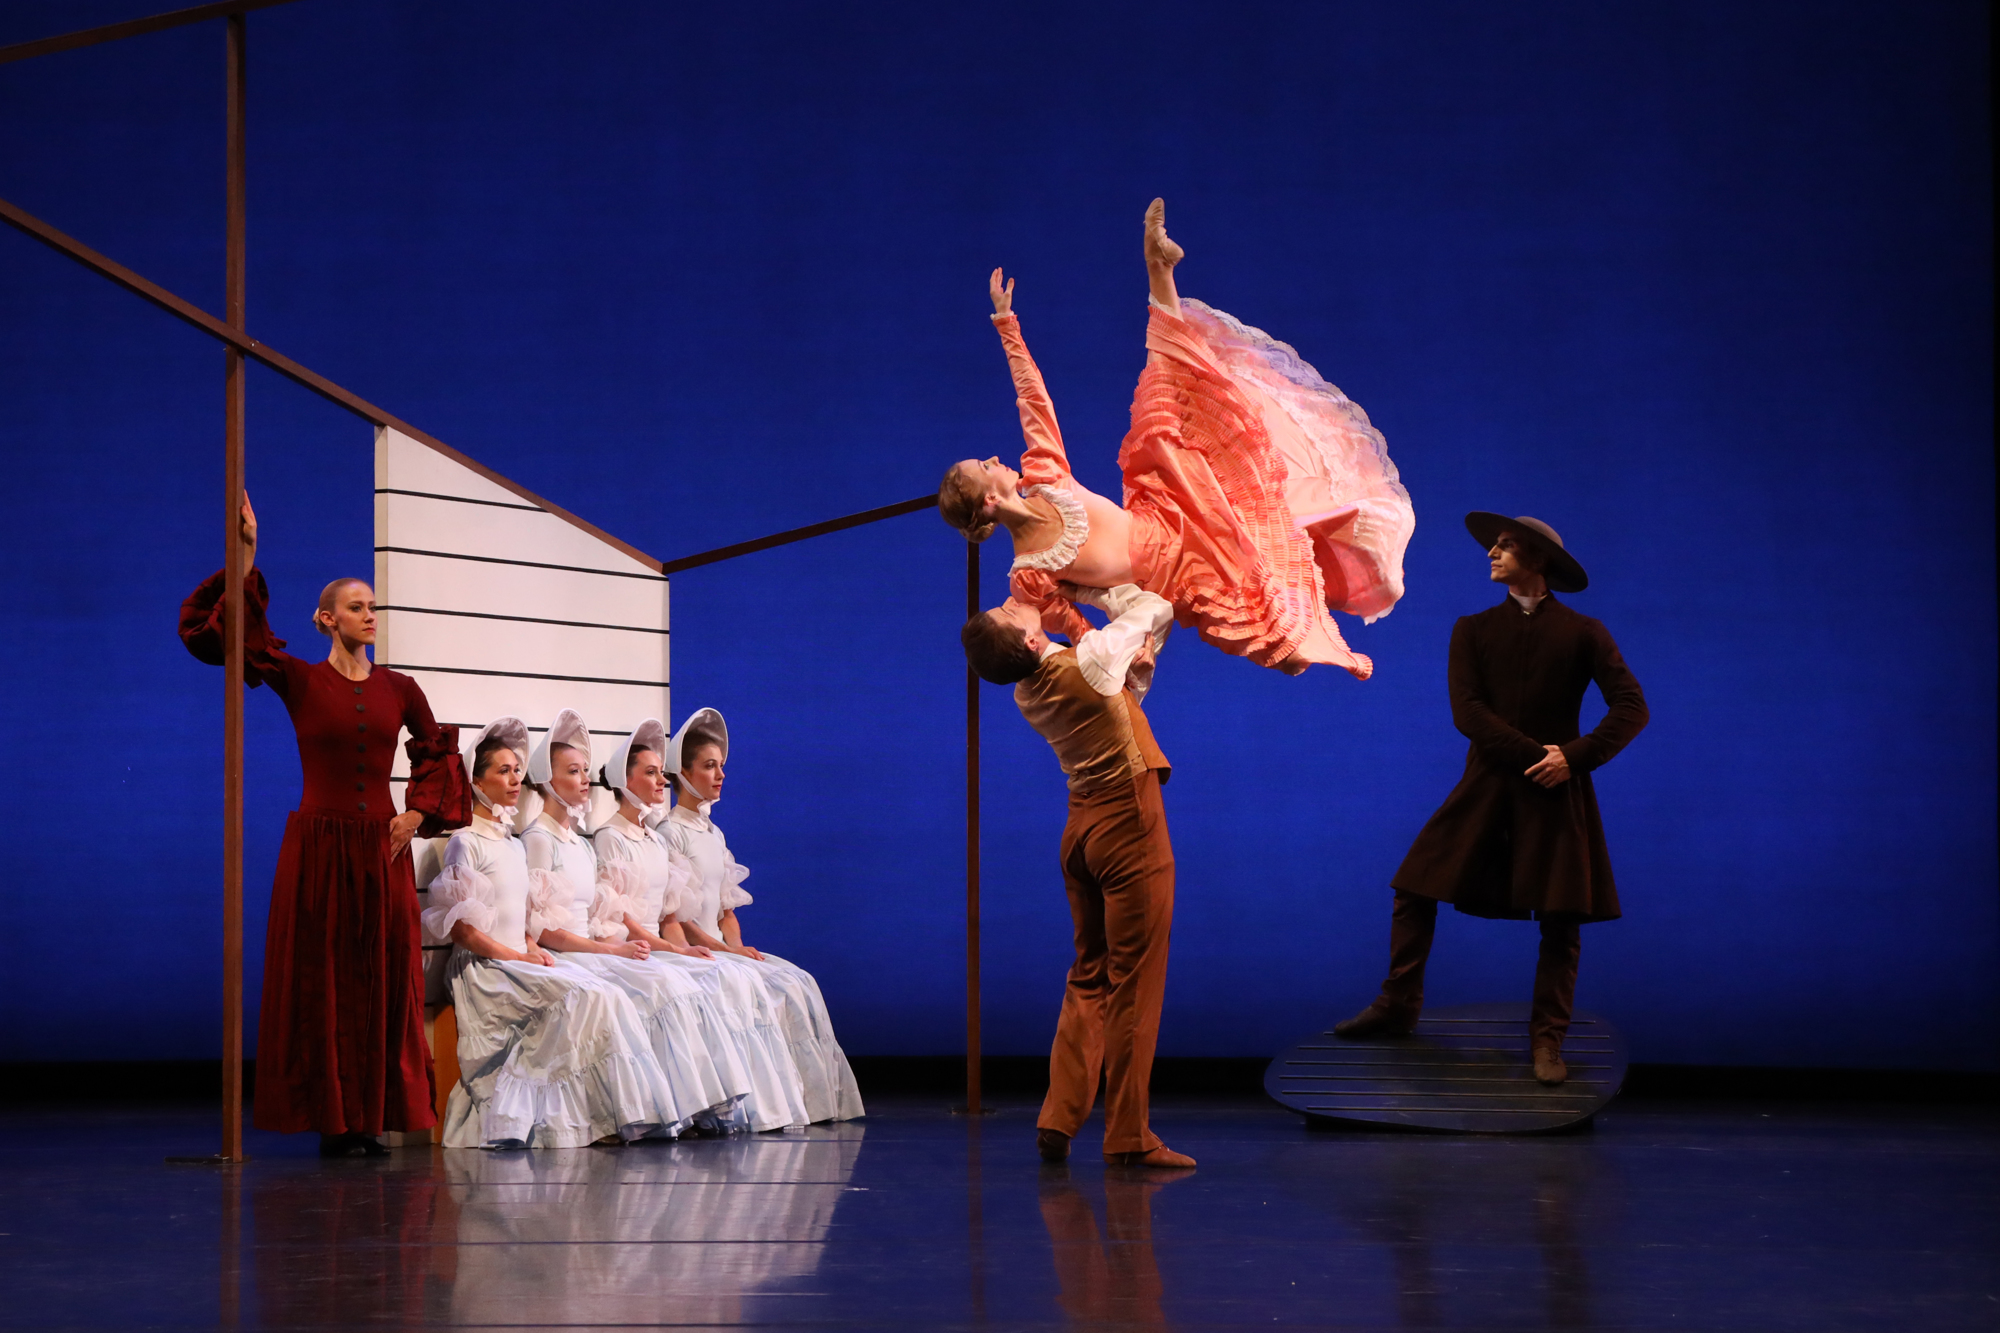 The Sarasota Ballet performs 